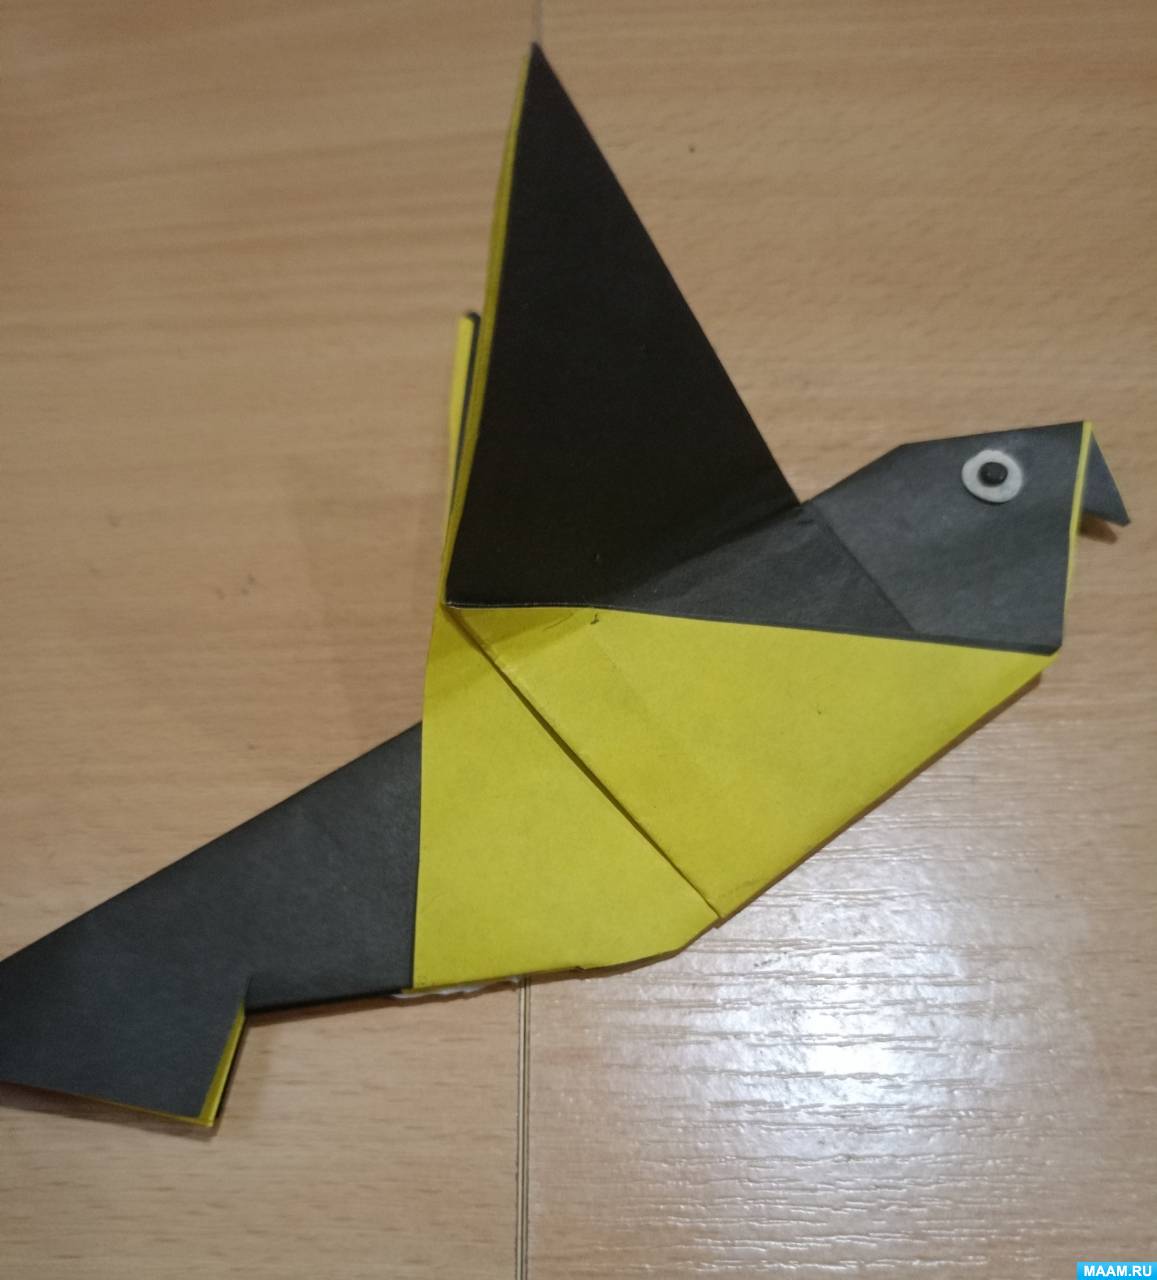 Педагогический проект «Оригами в детском саду